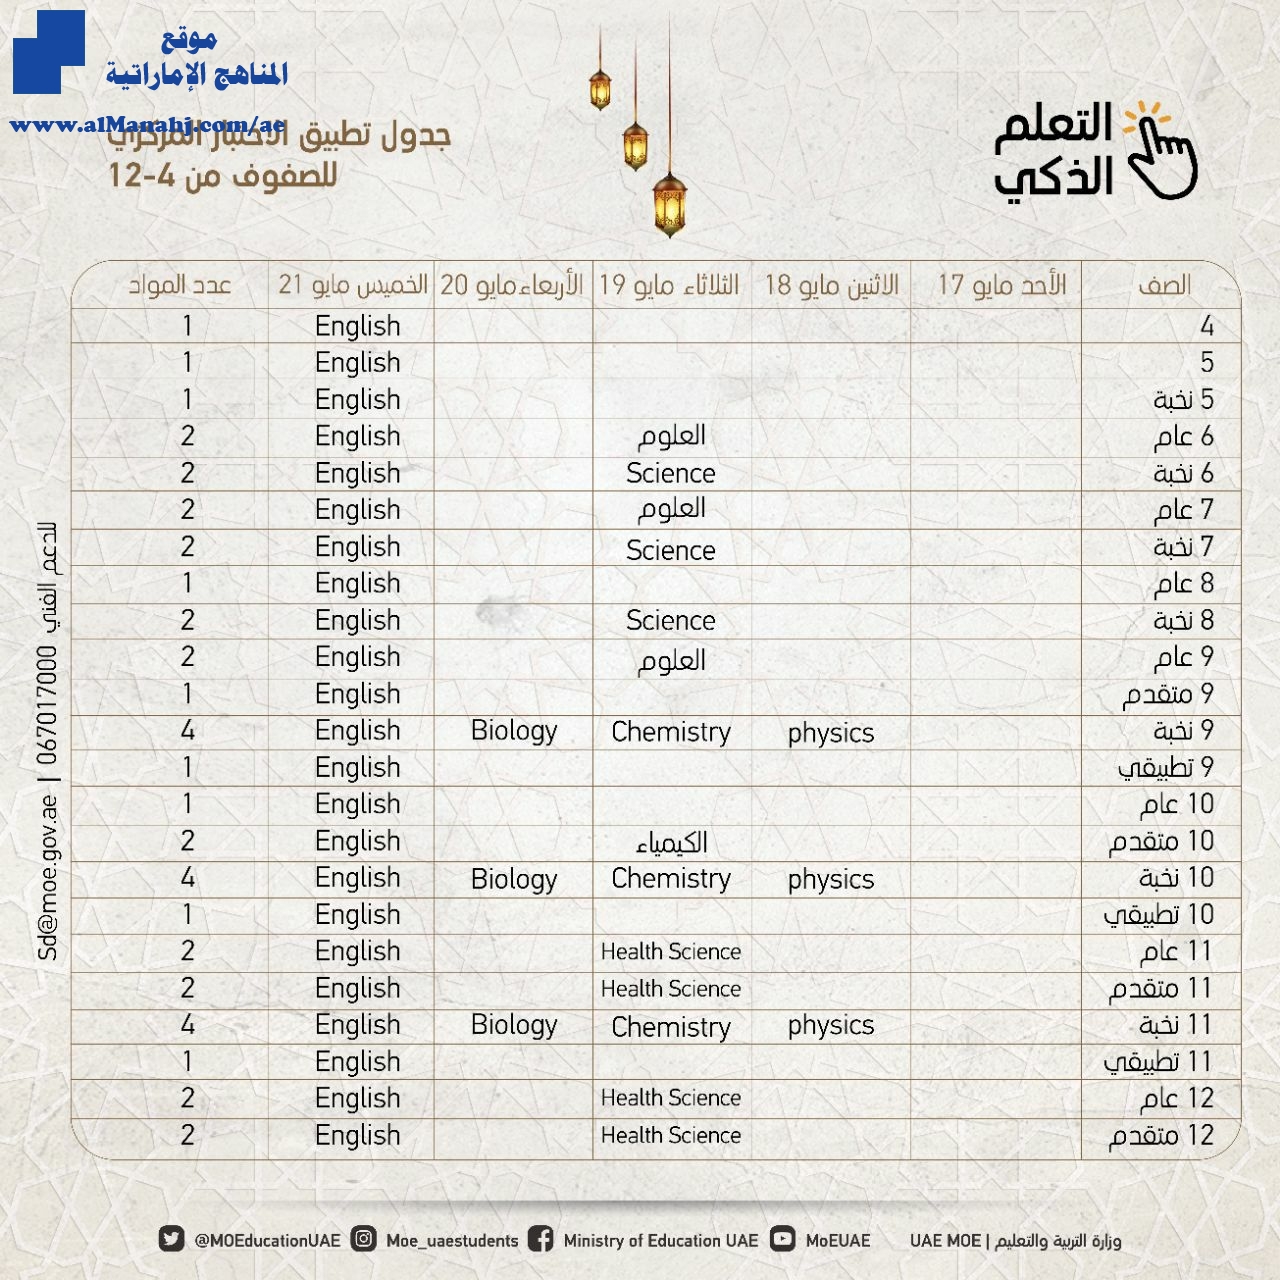 جدول اختبار التطبيق المركزي للصفوف من الرابع إلى الثاني عشر أخبار التربية الفصل الثالث 2019 2020 المناهج الإماراتية